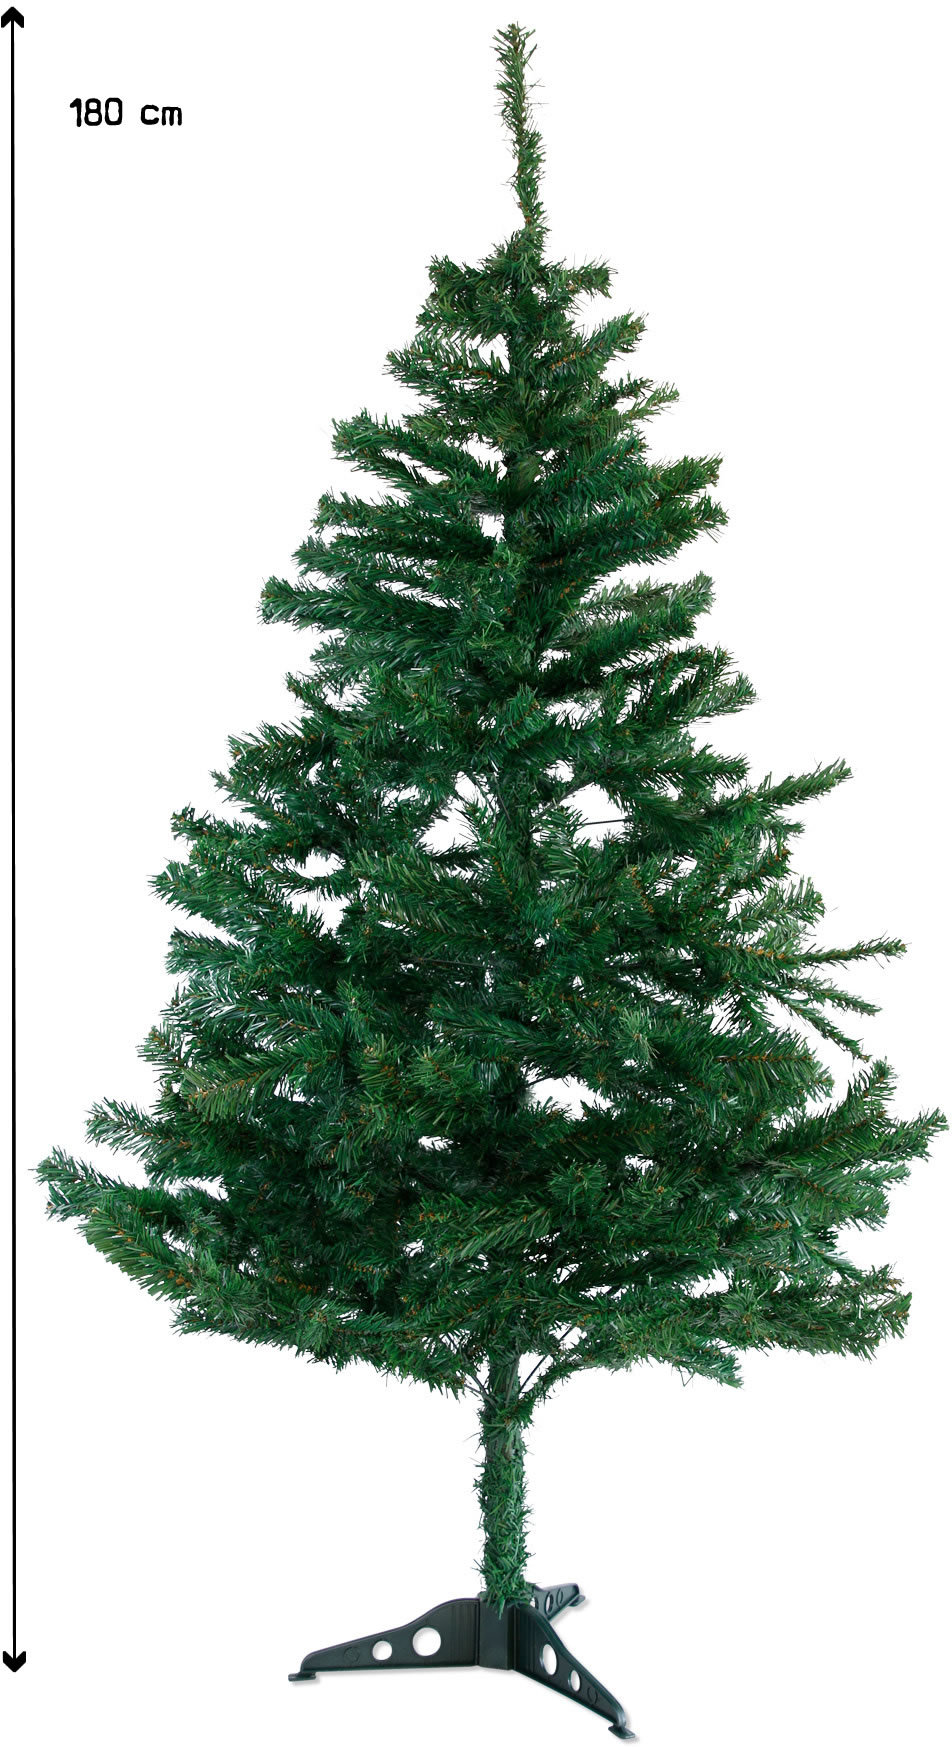 180cm künstlicher Weihnachtsbaum Christbaum Tannenbaum mit Metallständer, Schneller Montage und Faltung (180cm, Grün PVC)